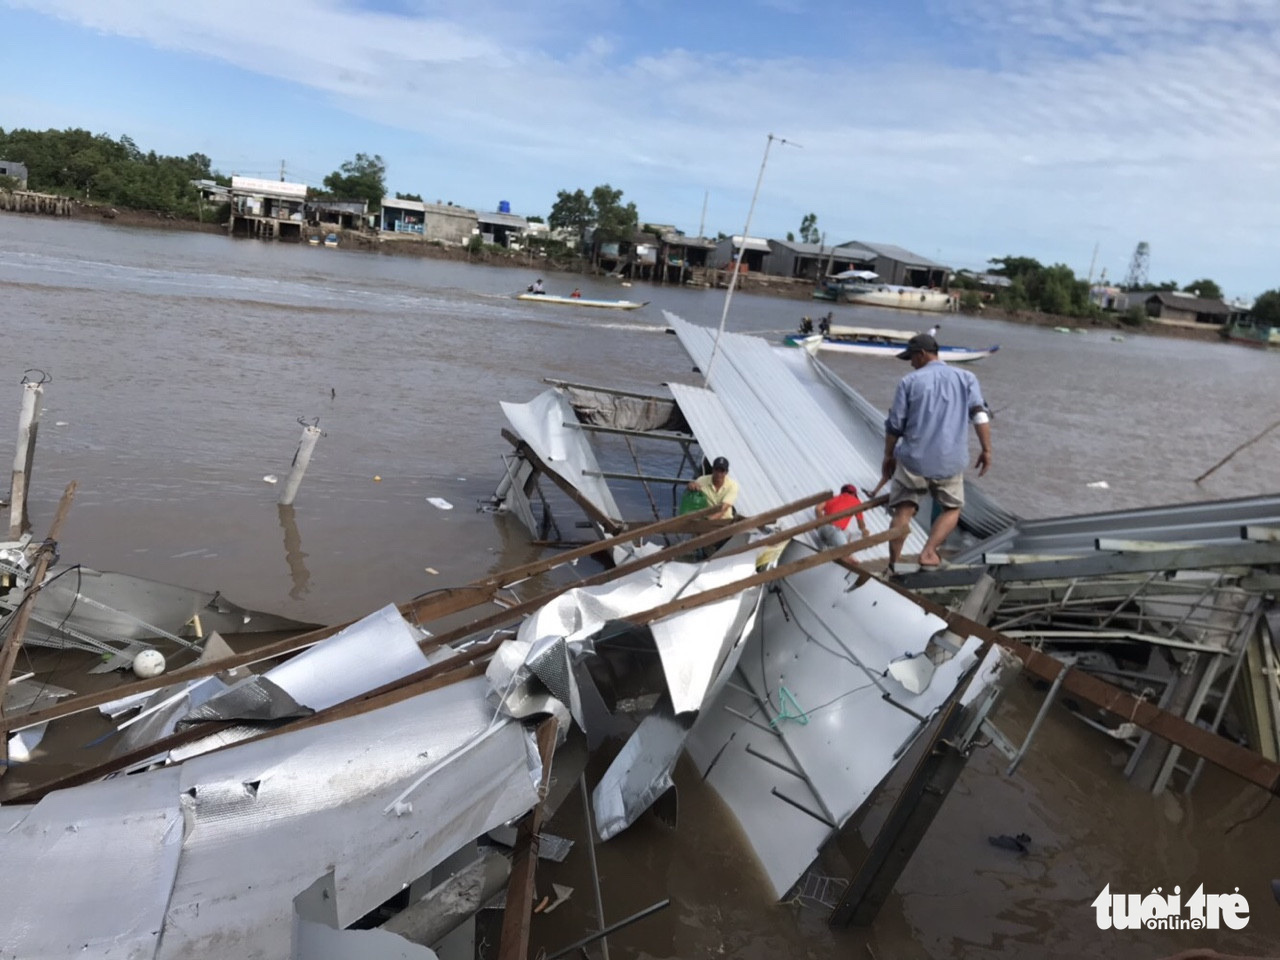 Subsidence sinks 14 houses in Vietnam’s Mekong Delta